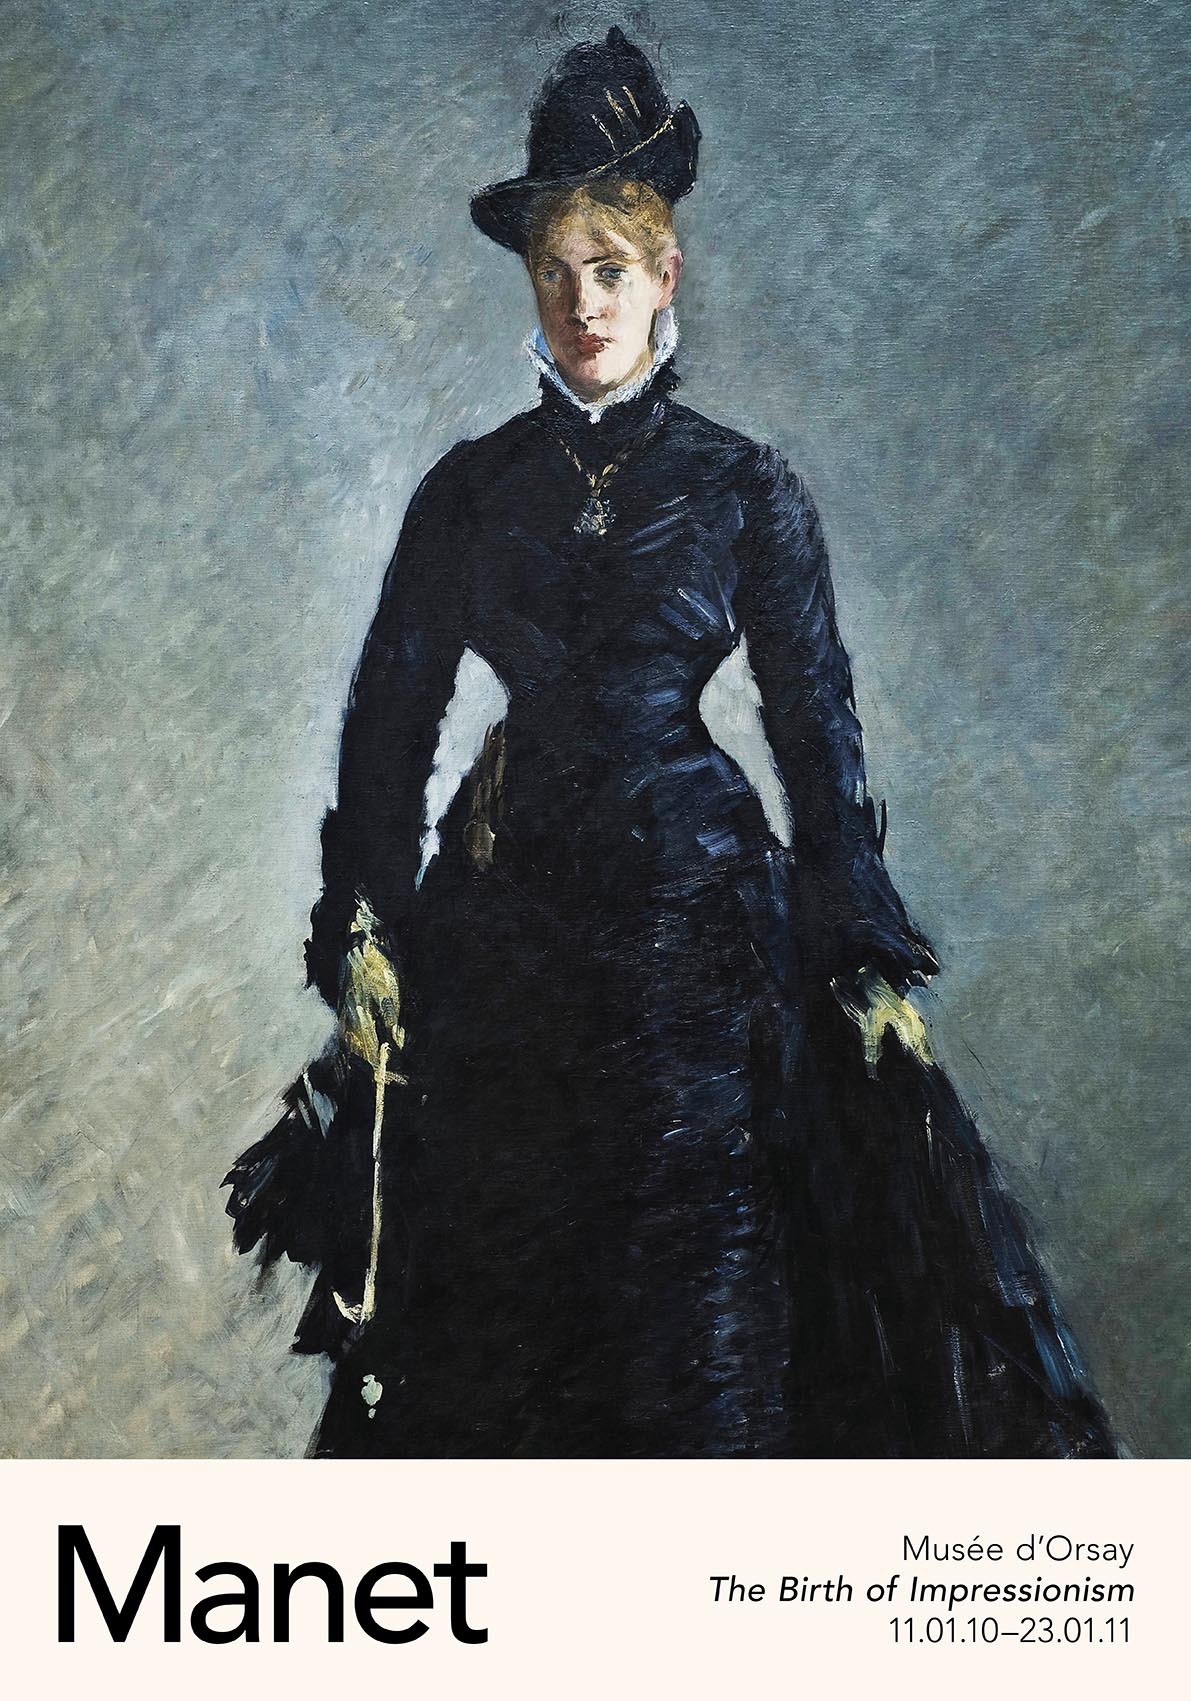 La Parisienne by Manet Exhibition Poster